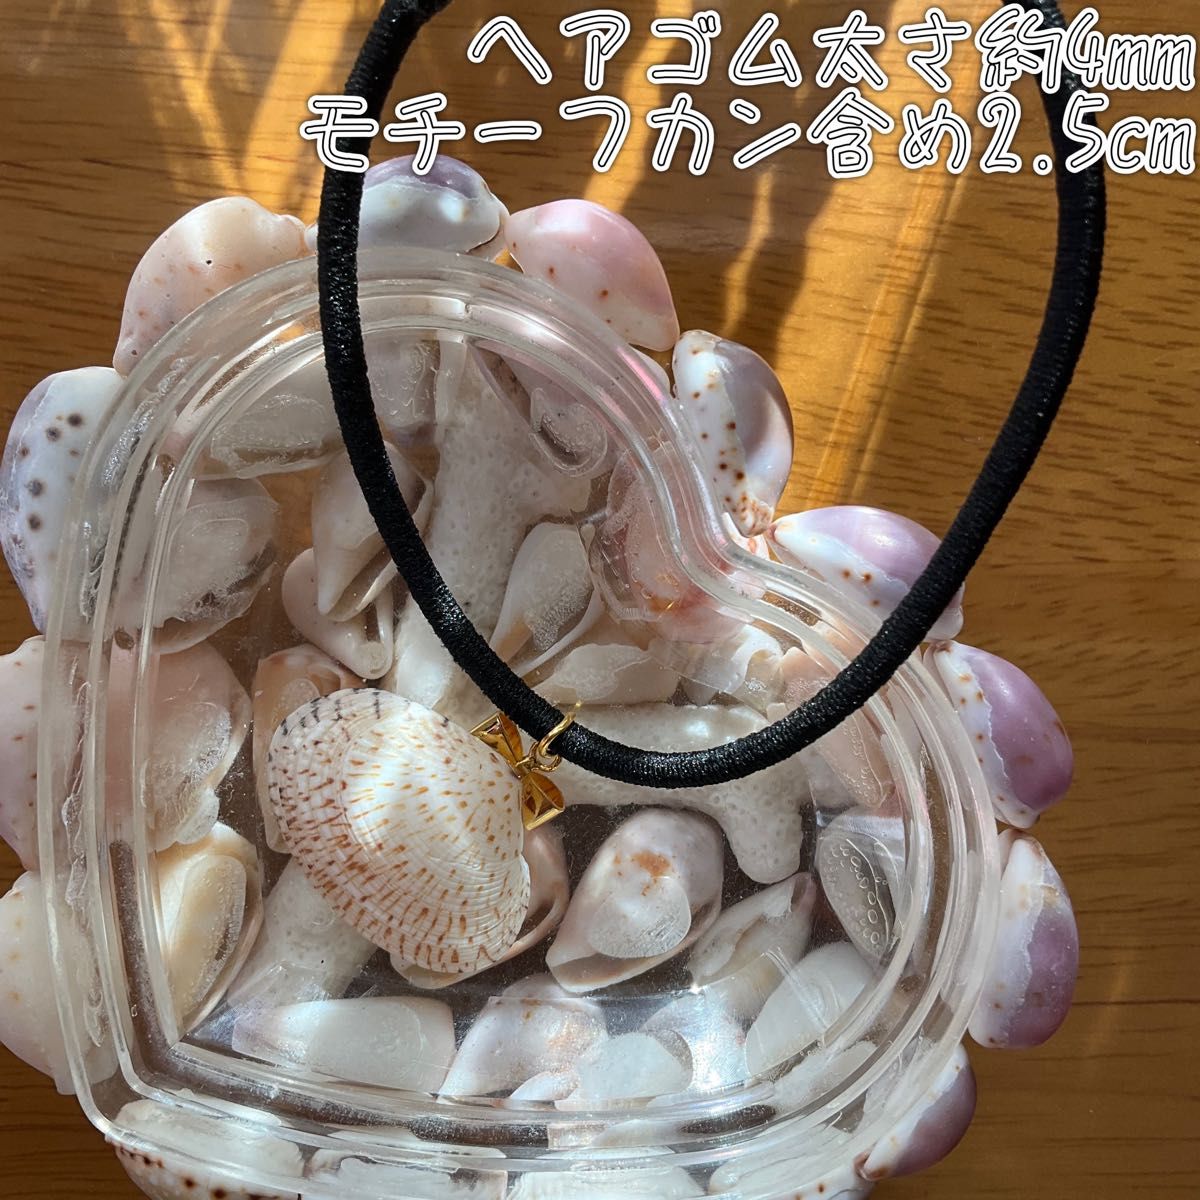 【ハンドメイド】ヘアゴム//二枚貝 handmade ハンドメイドヘアゴム リボン 貝殻 手作り【No.5】